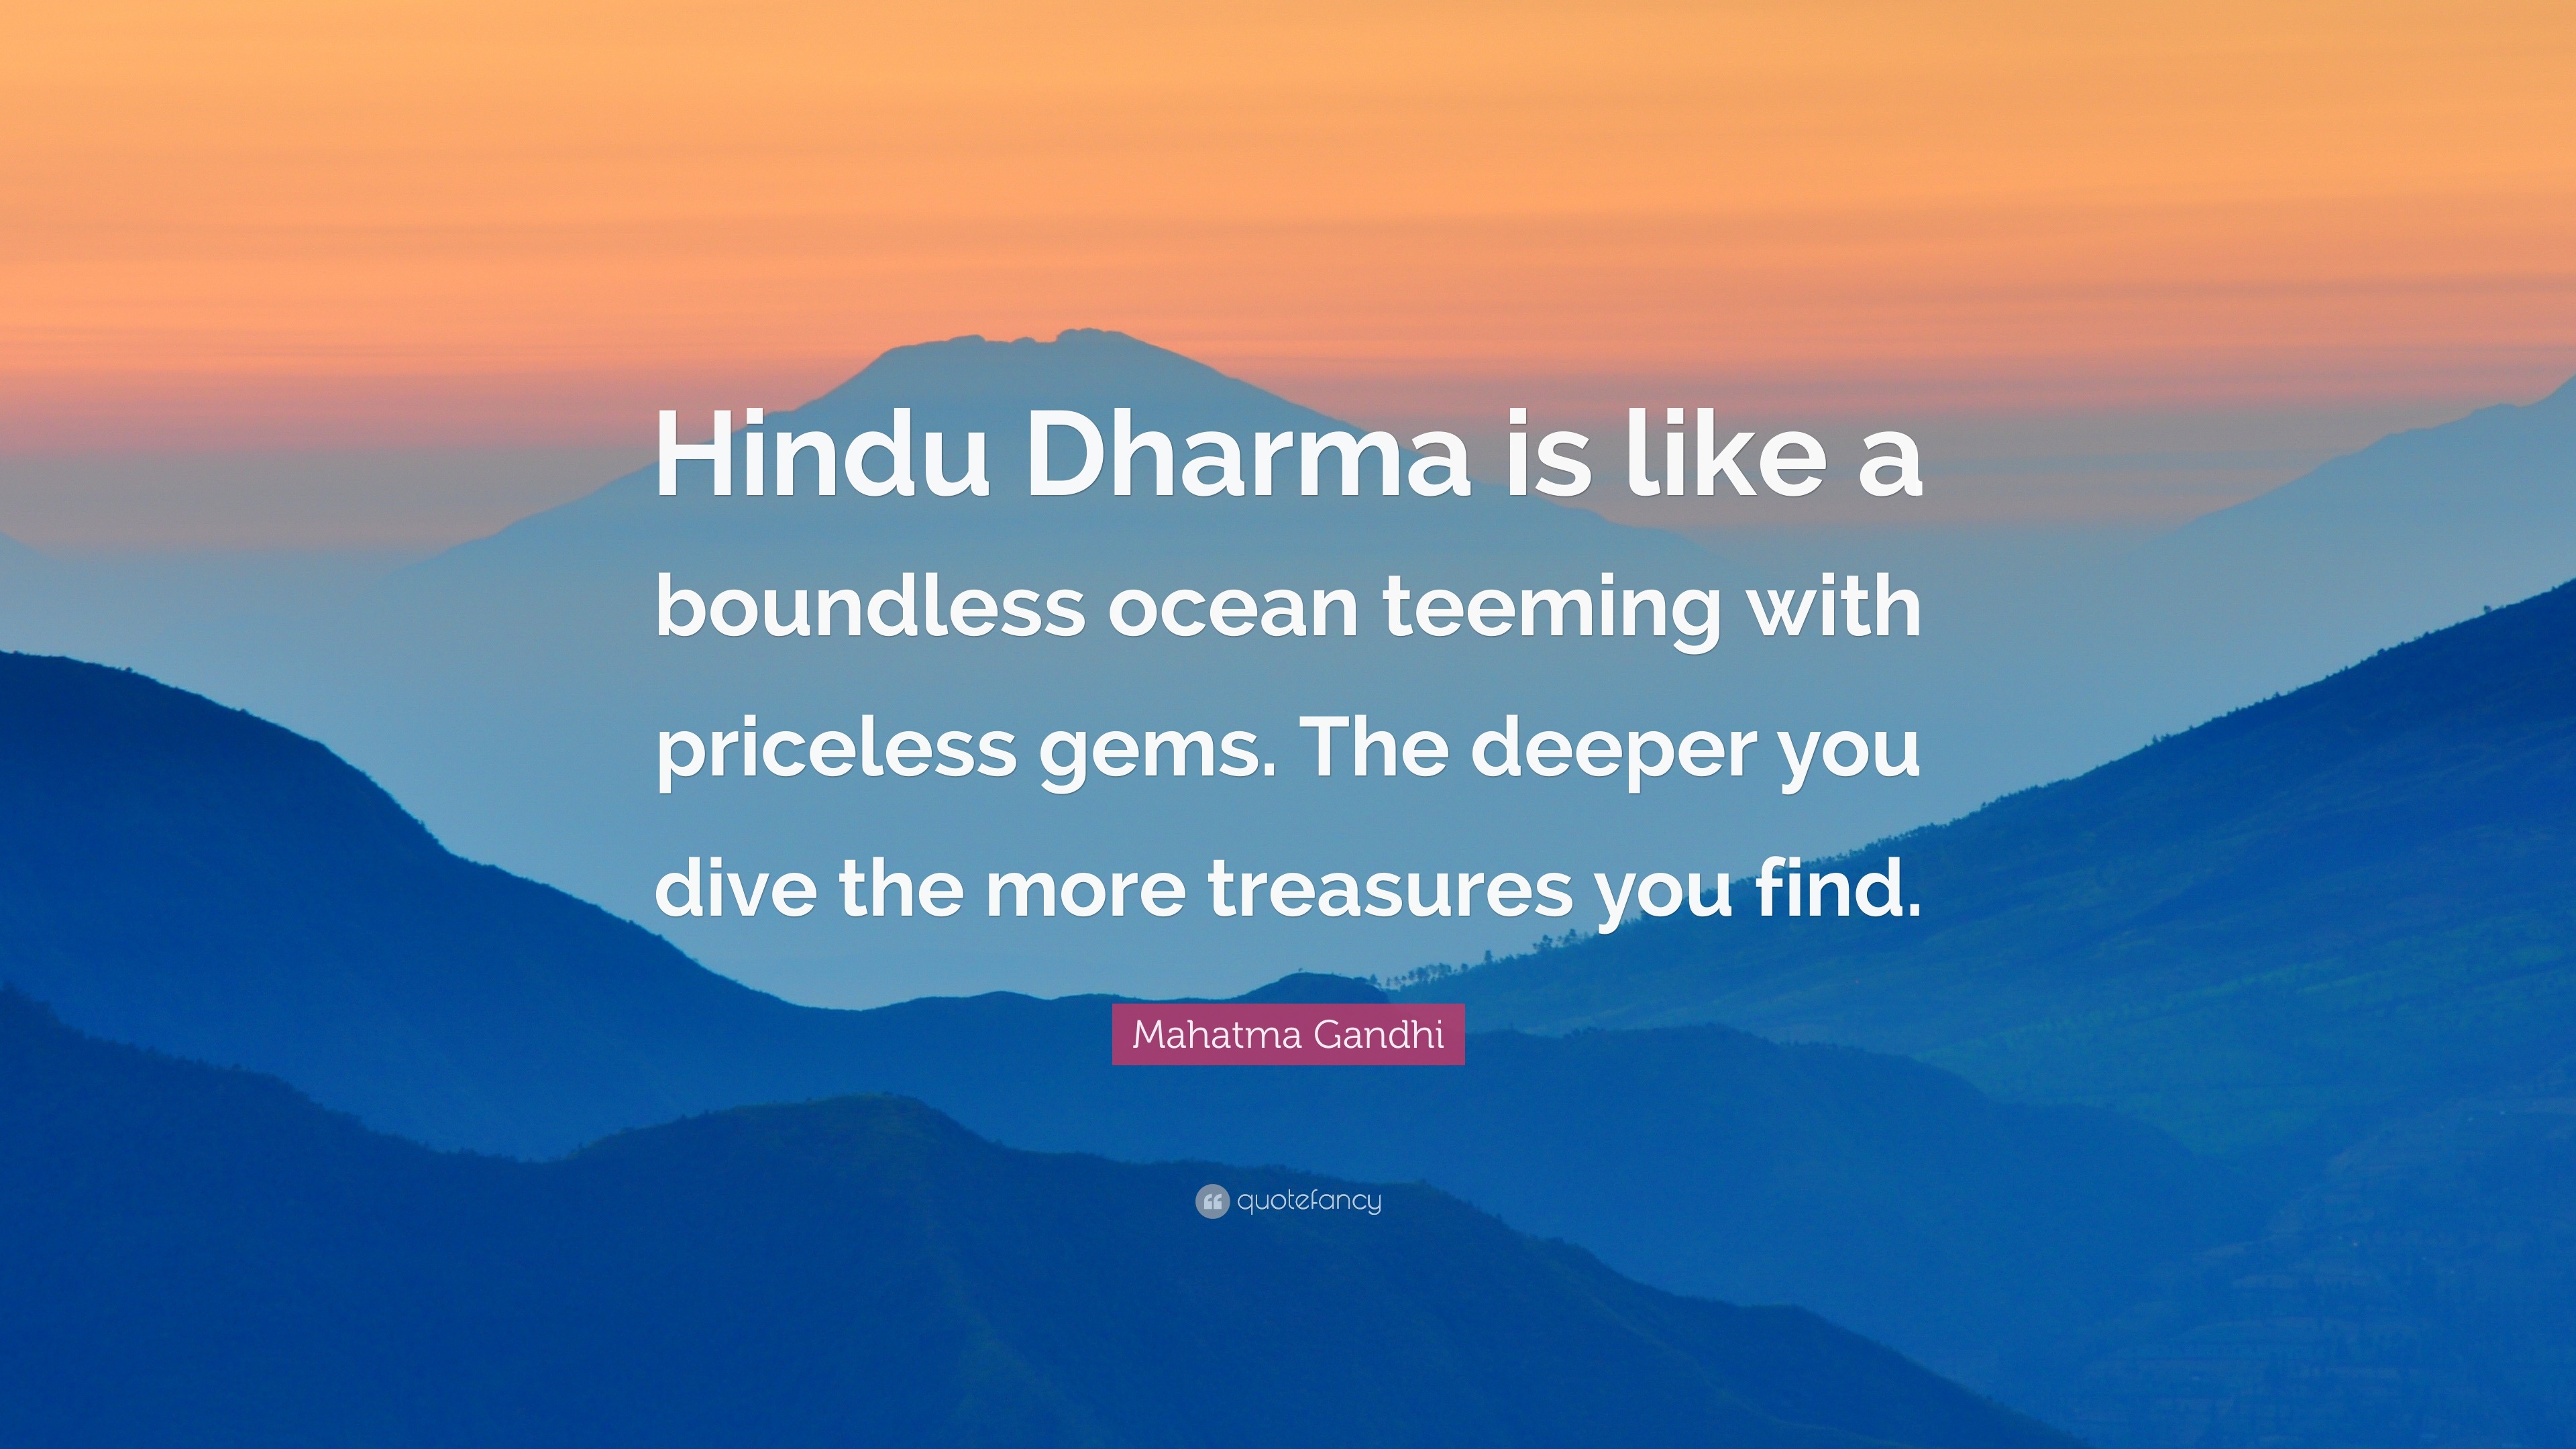 short essay on hindu dharma in hindi